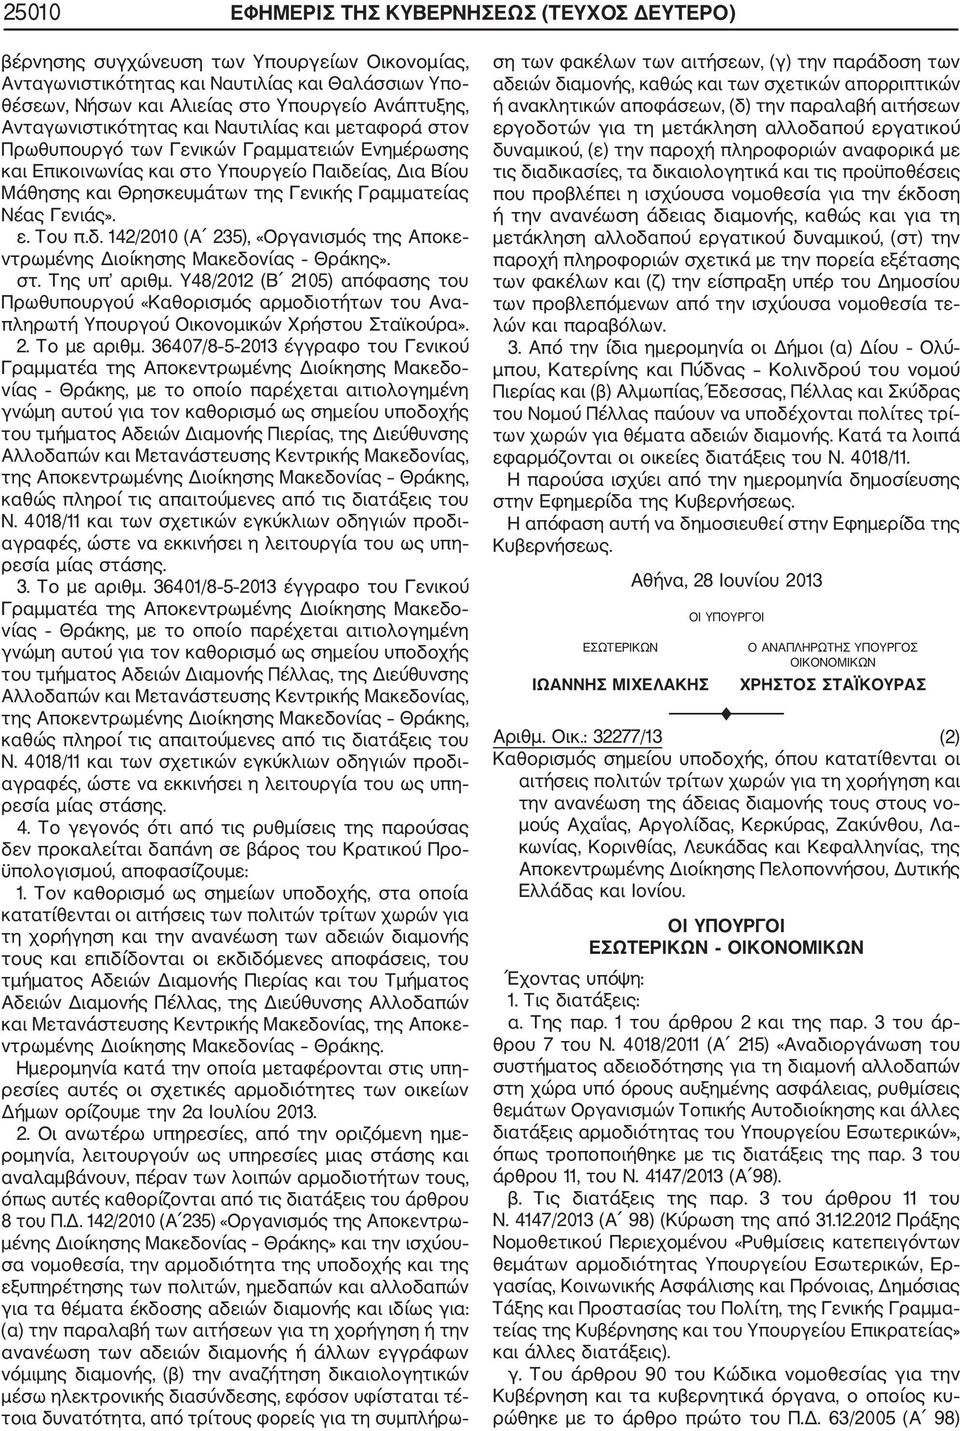 Γραμματείας Νέας Γενιάς». ε. Του π.δ. 142/2010 (Α 235), «Οργανισμός της Αποκε ντρωμένης Διοίκησης Μακεδονίας Θράκης». στ. Της υπ αριθμ.